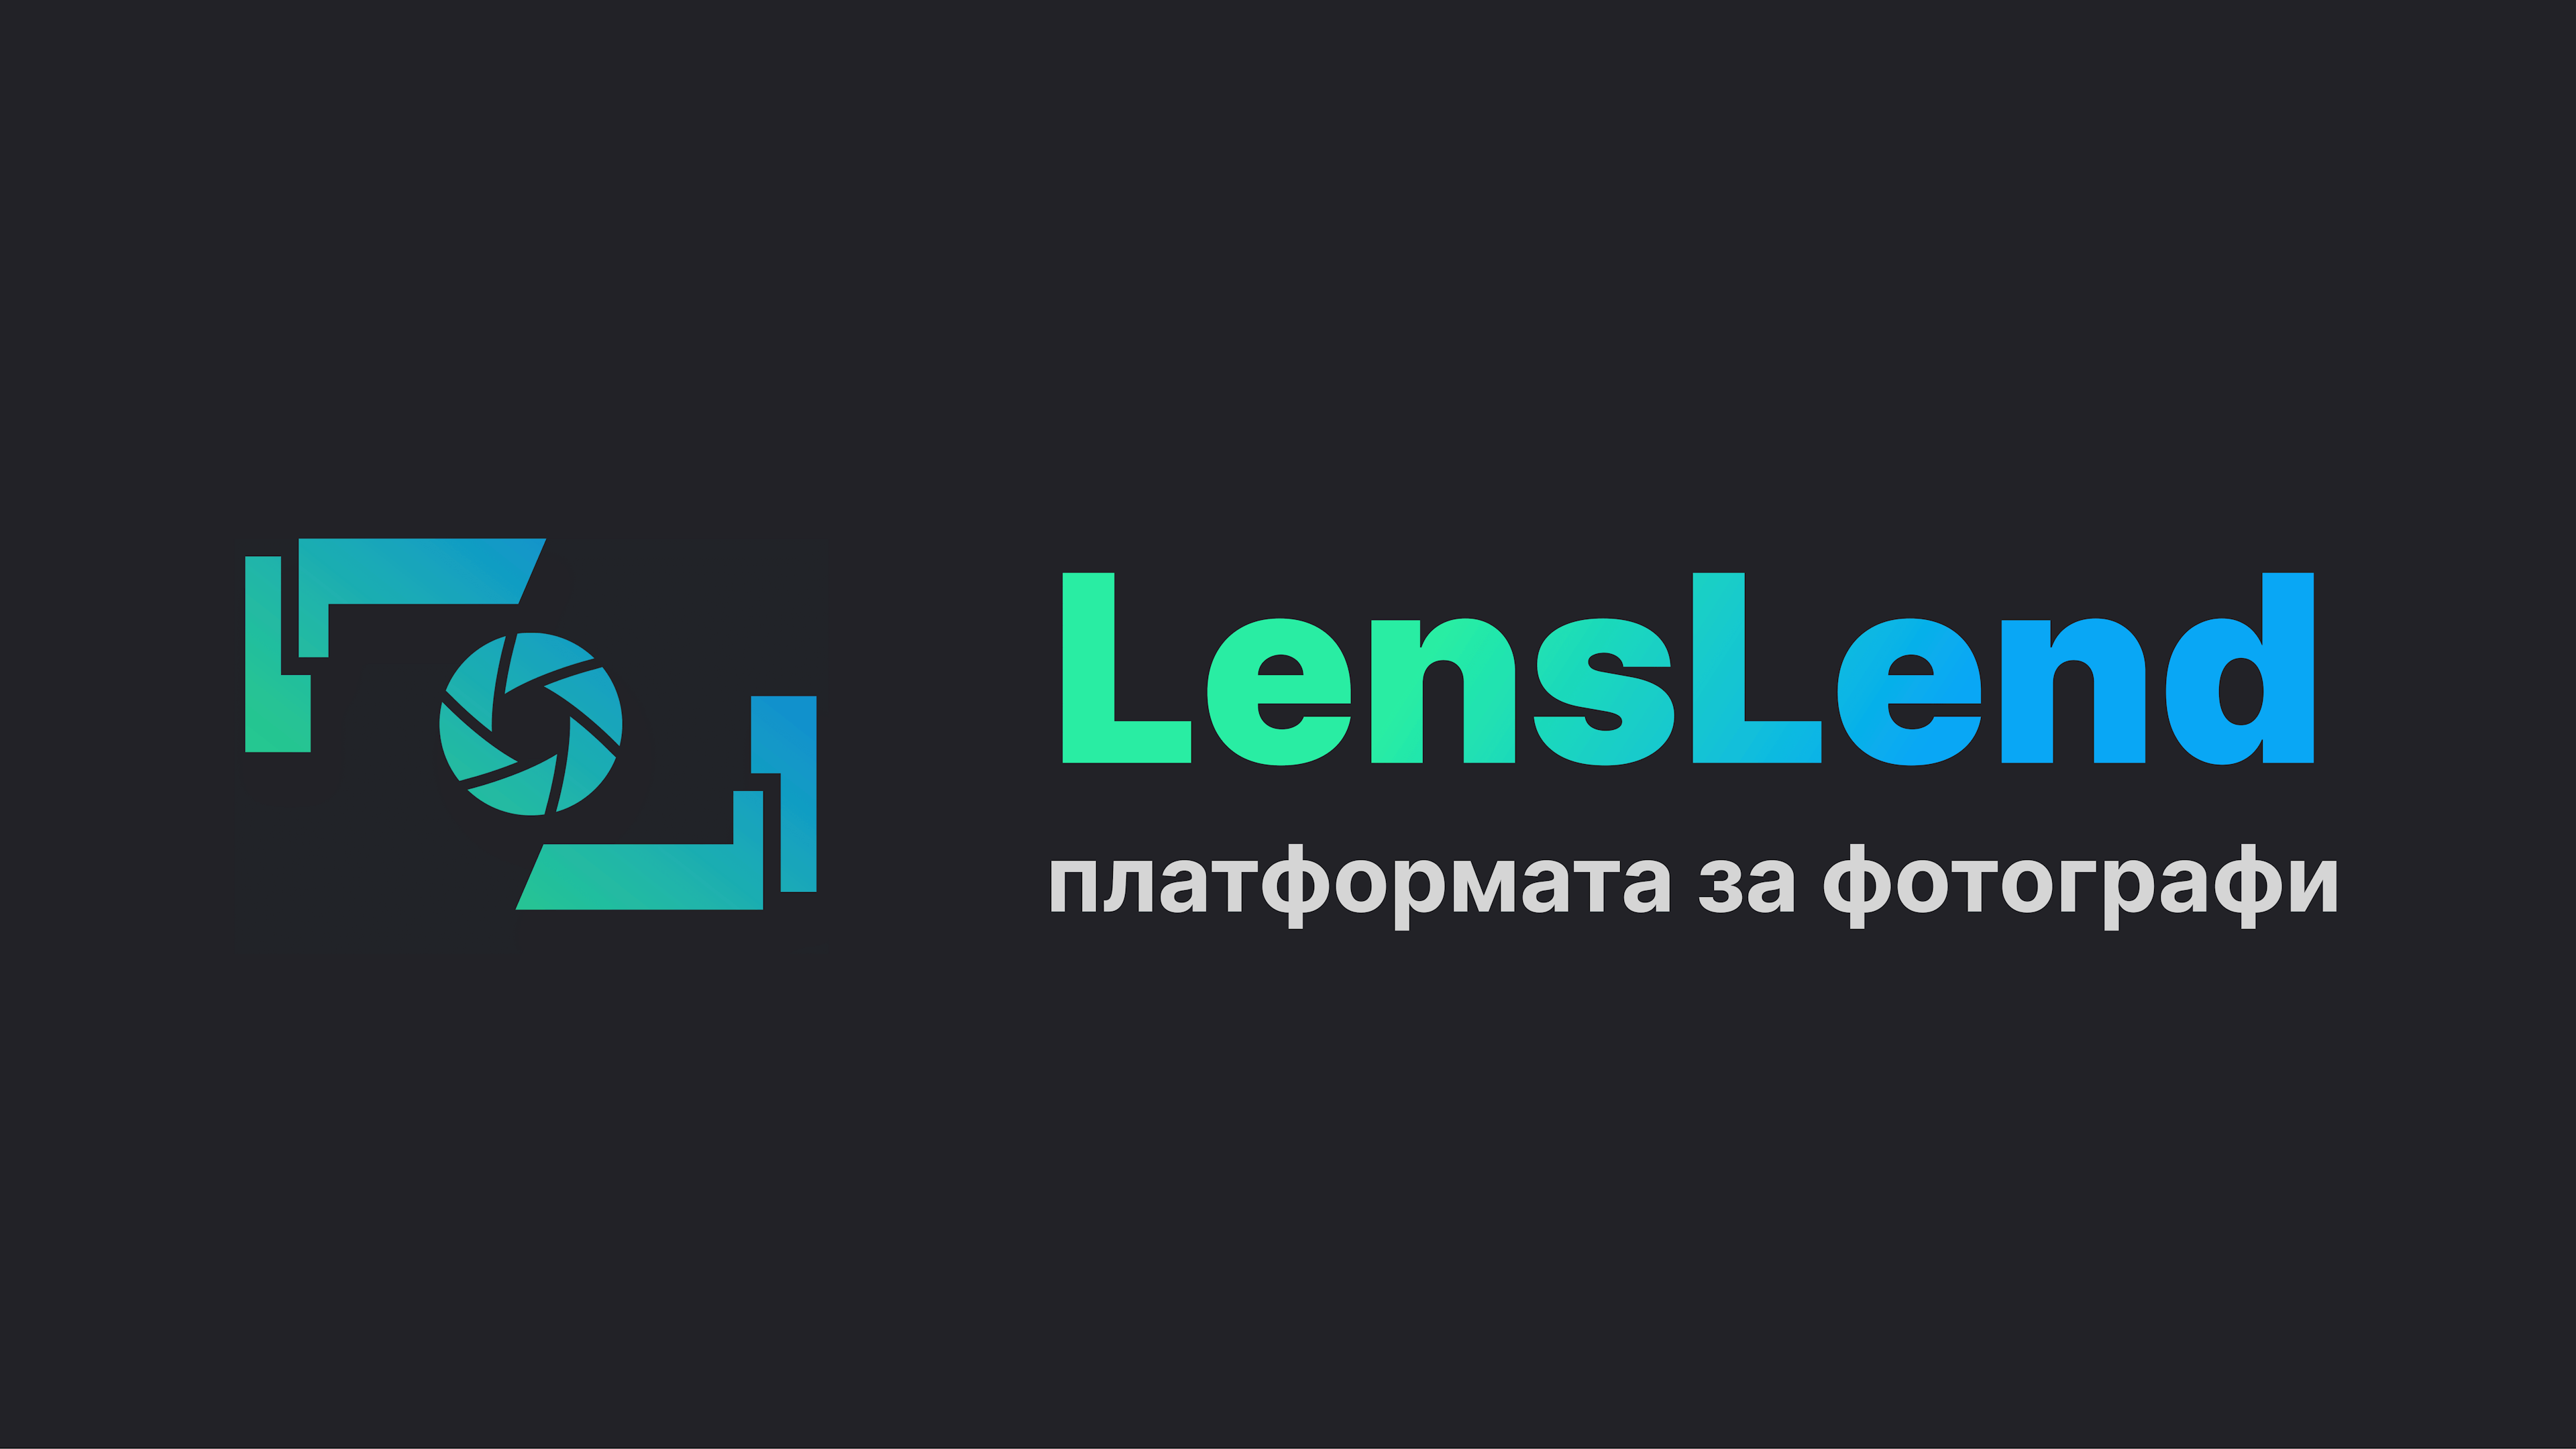 LensLend - платформата на фотографа